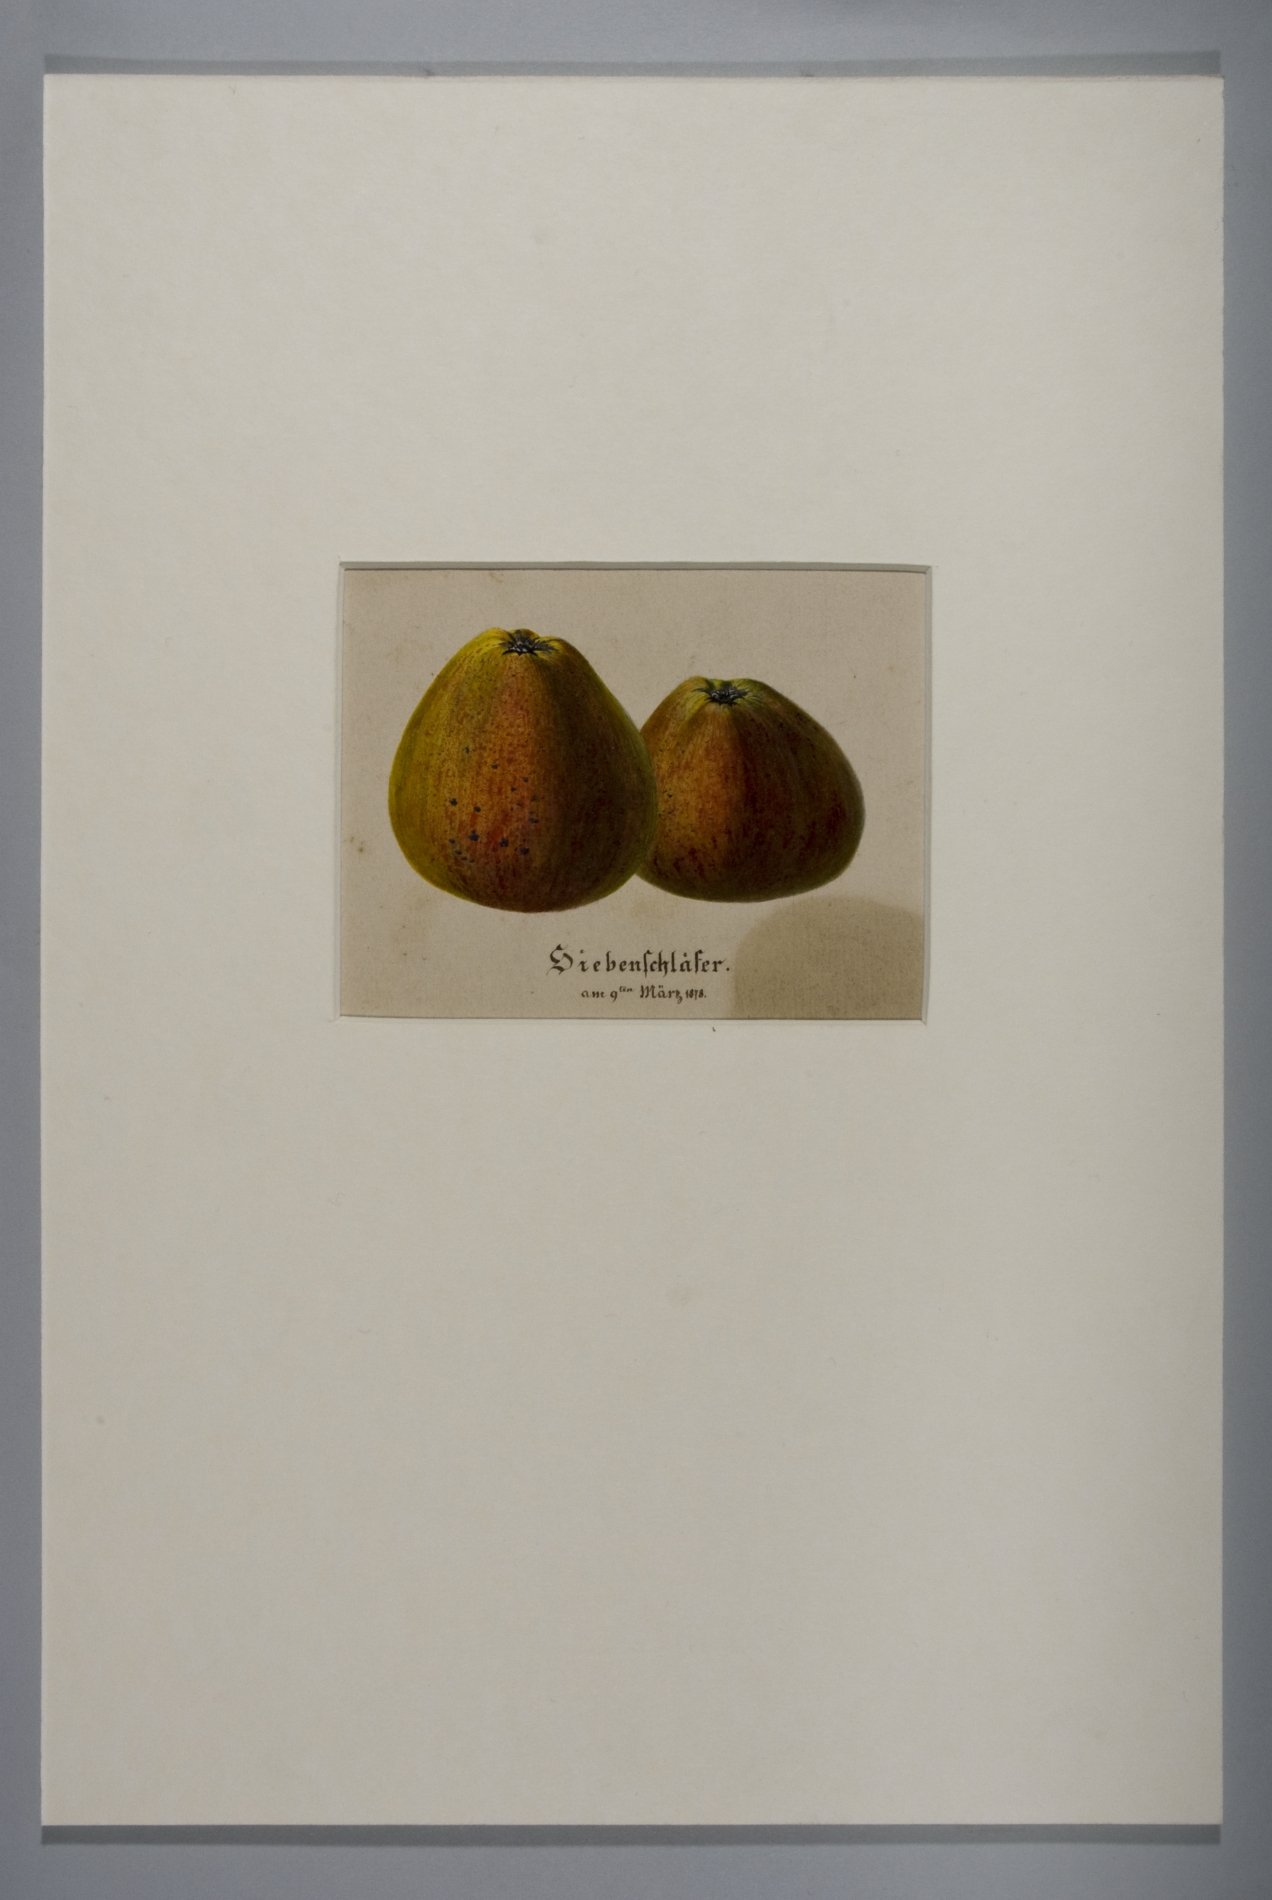 Tuschzeichnung "Äpfel" - "Siebenschläfer" (Stiftung Domäne Dahlem - Landgut und Museum, Weiternutzung nur mit Genehmigung des Museums CC BY-NC-SA)